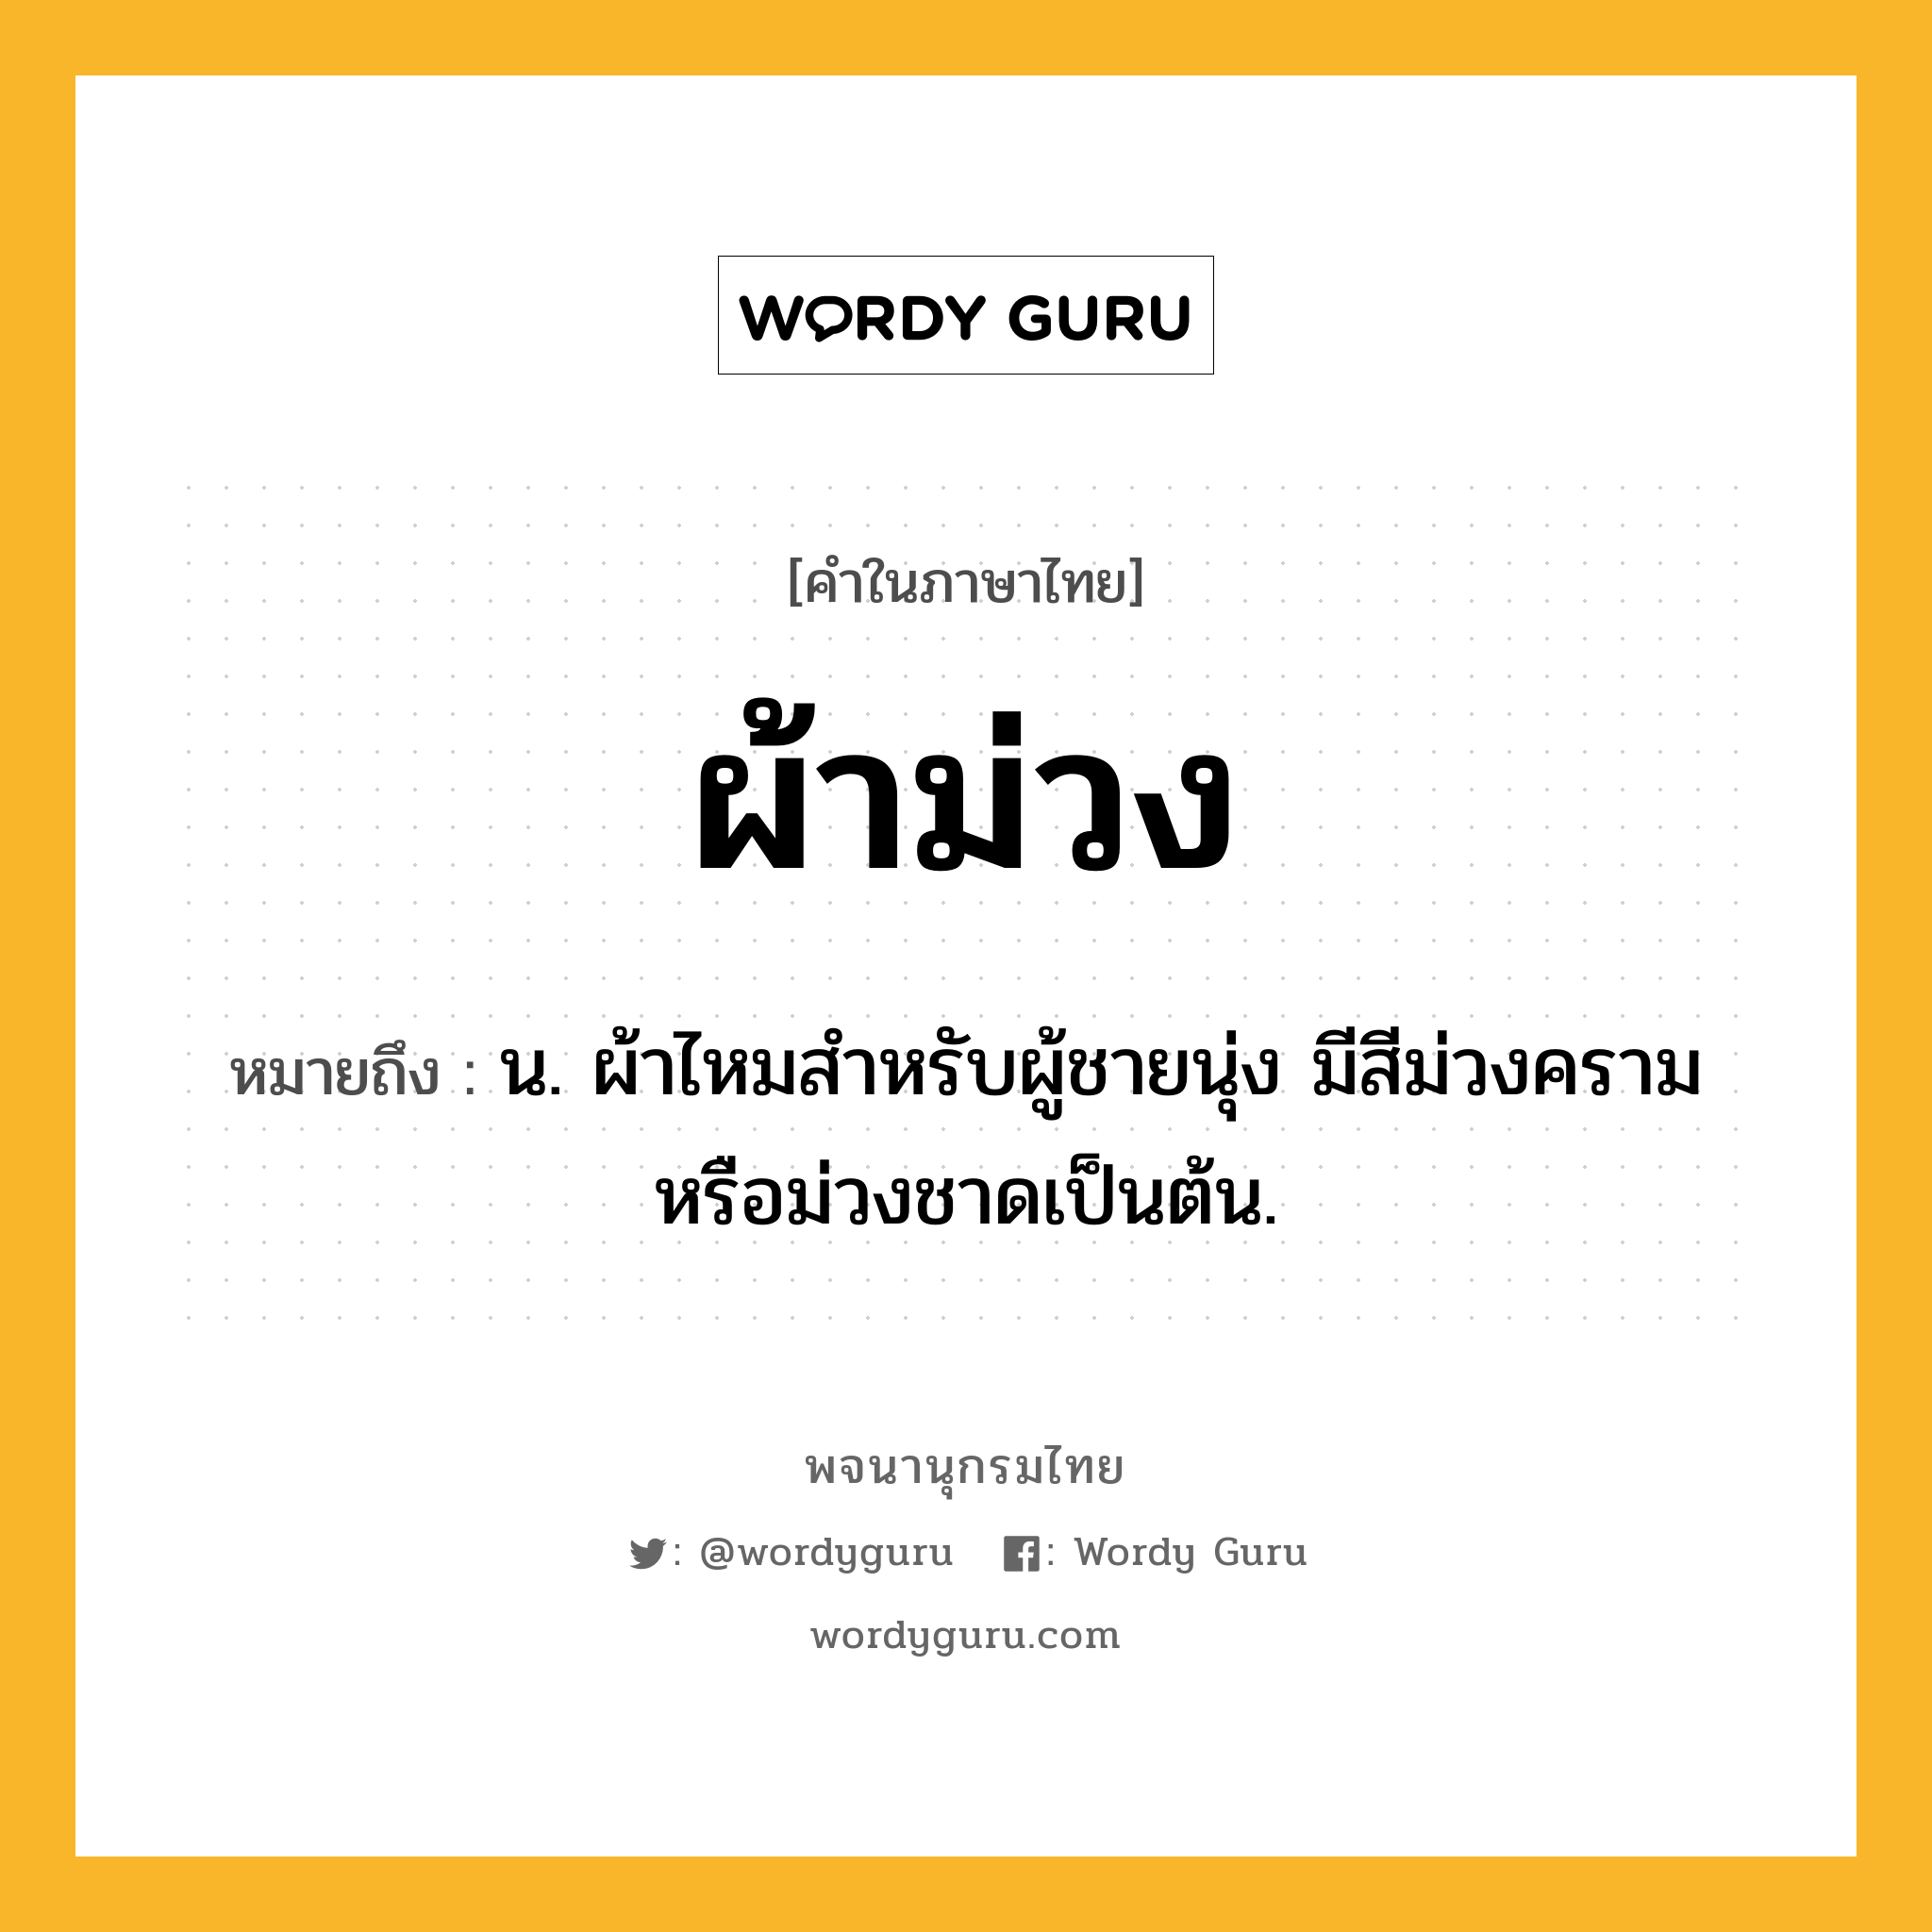 ผ้าม่วง ความหมาย หมายถึงอะไร?, คำในภาษาไทย ผ้าม่วง หมายถึง น. ผ้าไหมสำหรับผู้ชายนุ่ง มีสีม่วงครามหรือม่วงชาดเป็นต้น.